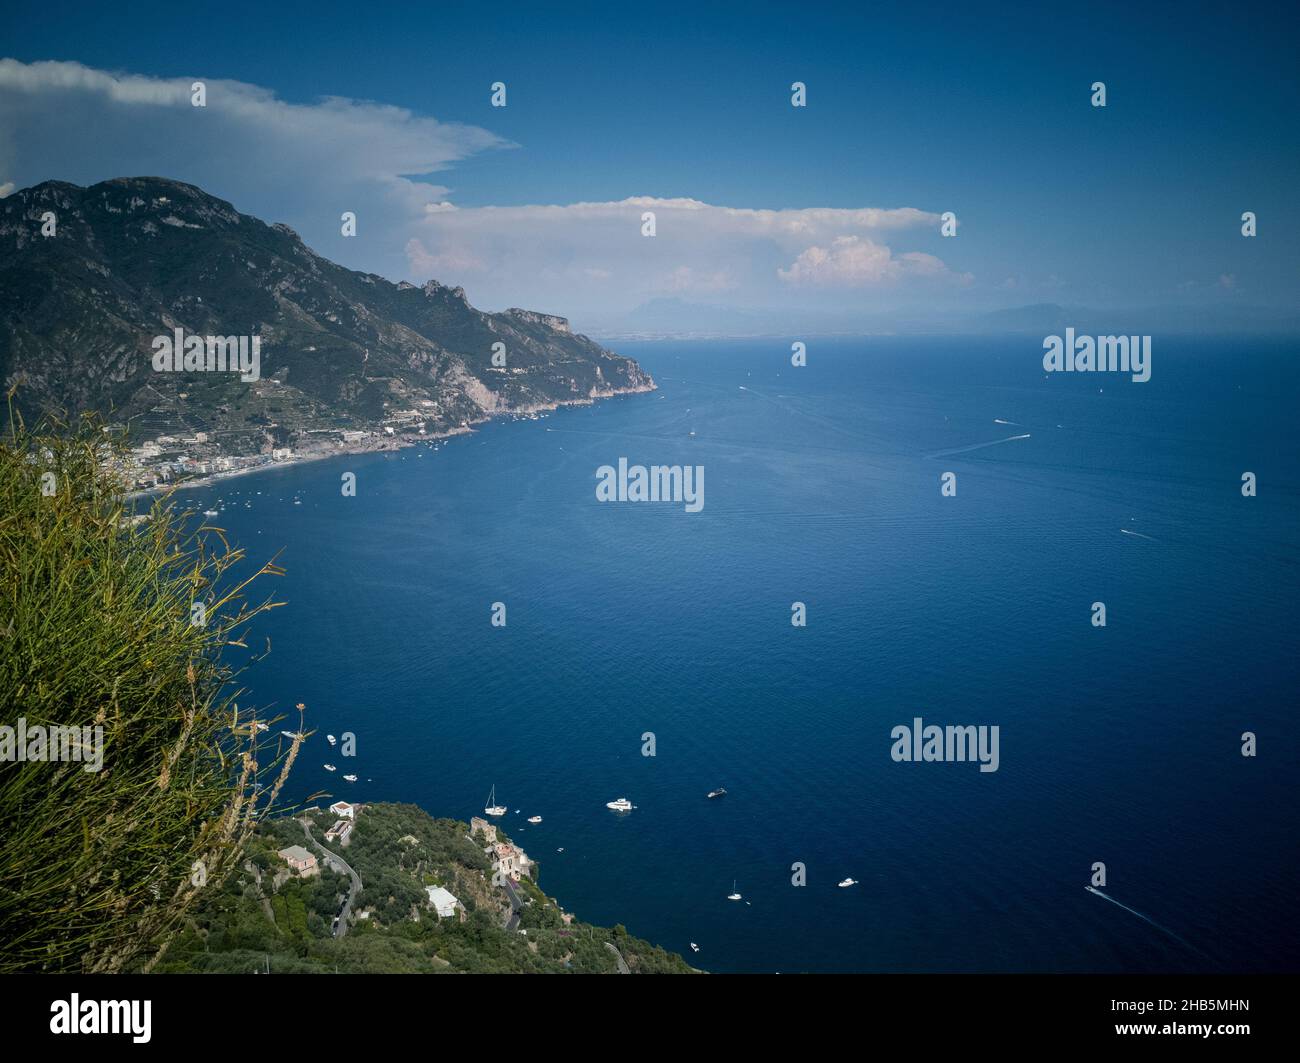 Vista panoramica della famosa Costiera Amalfitana vista dai giardini di Villa Rufolo a Ravello, Campania, Italia Foto Stock